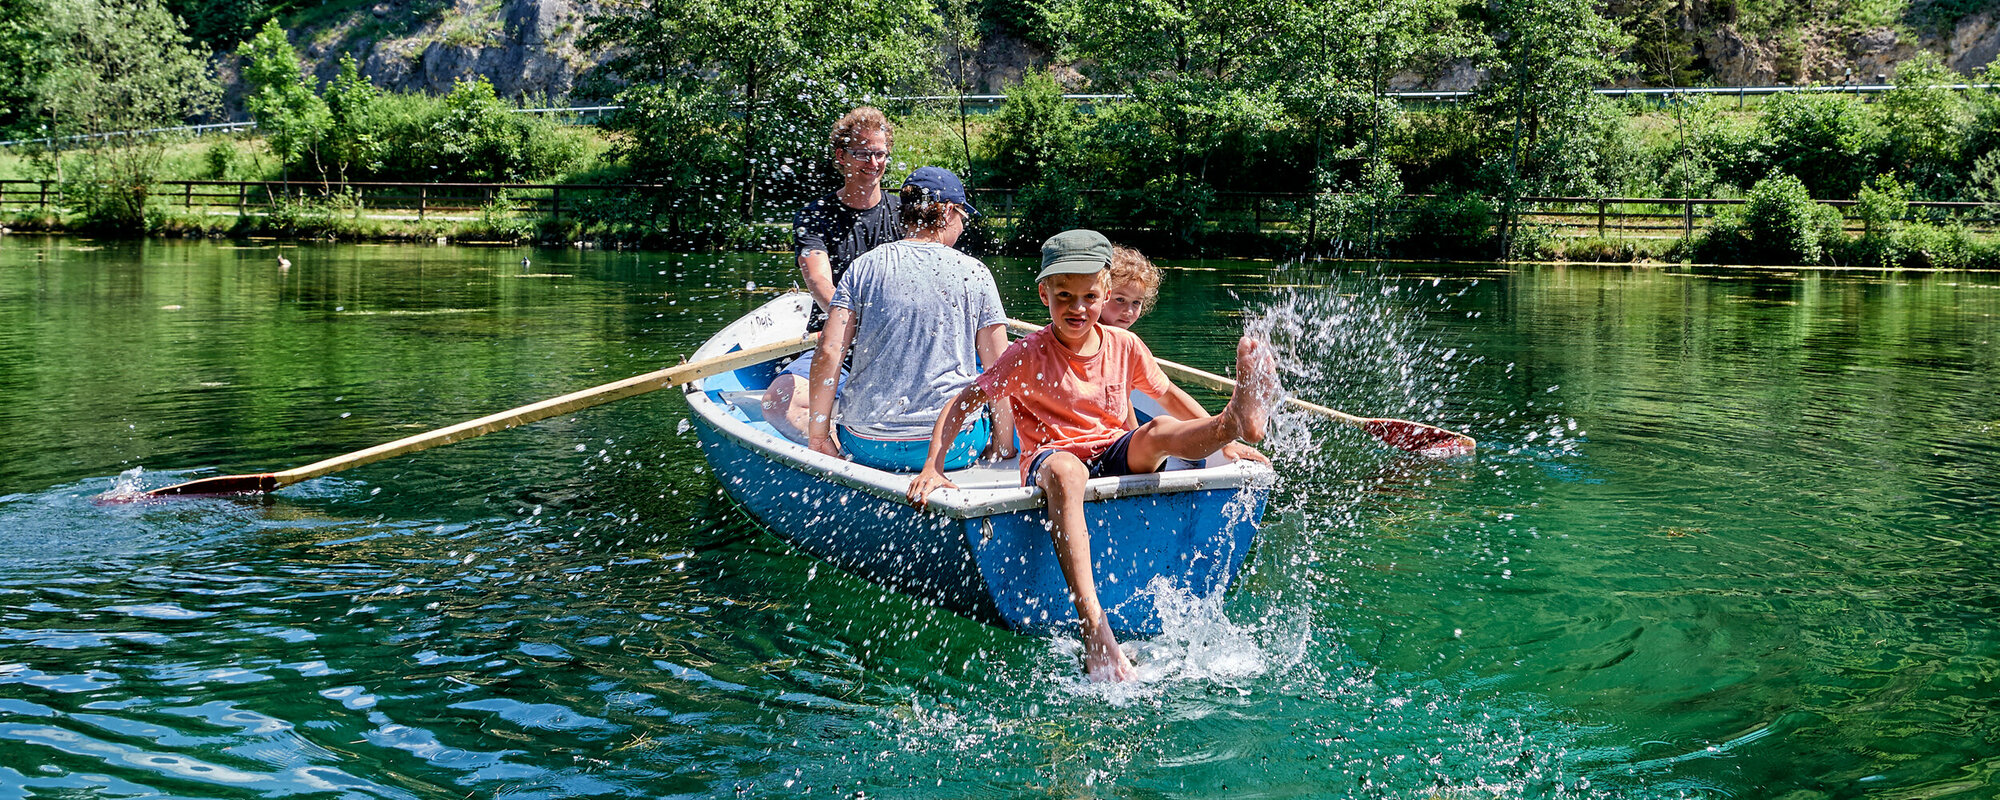 Eine Familie sitzt in einem blauen Boot auf einem See, der von Wald umgeben ist. Der Vater rudert, der Sohn sitzt hinten an der Kante und spritzt mit dem Fuß mit Wasser.